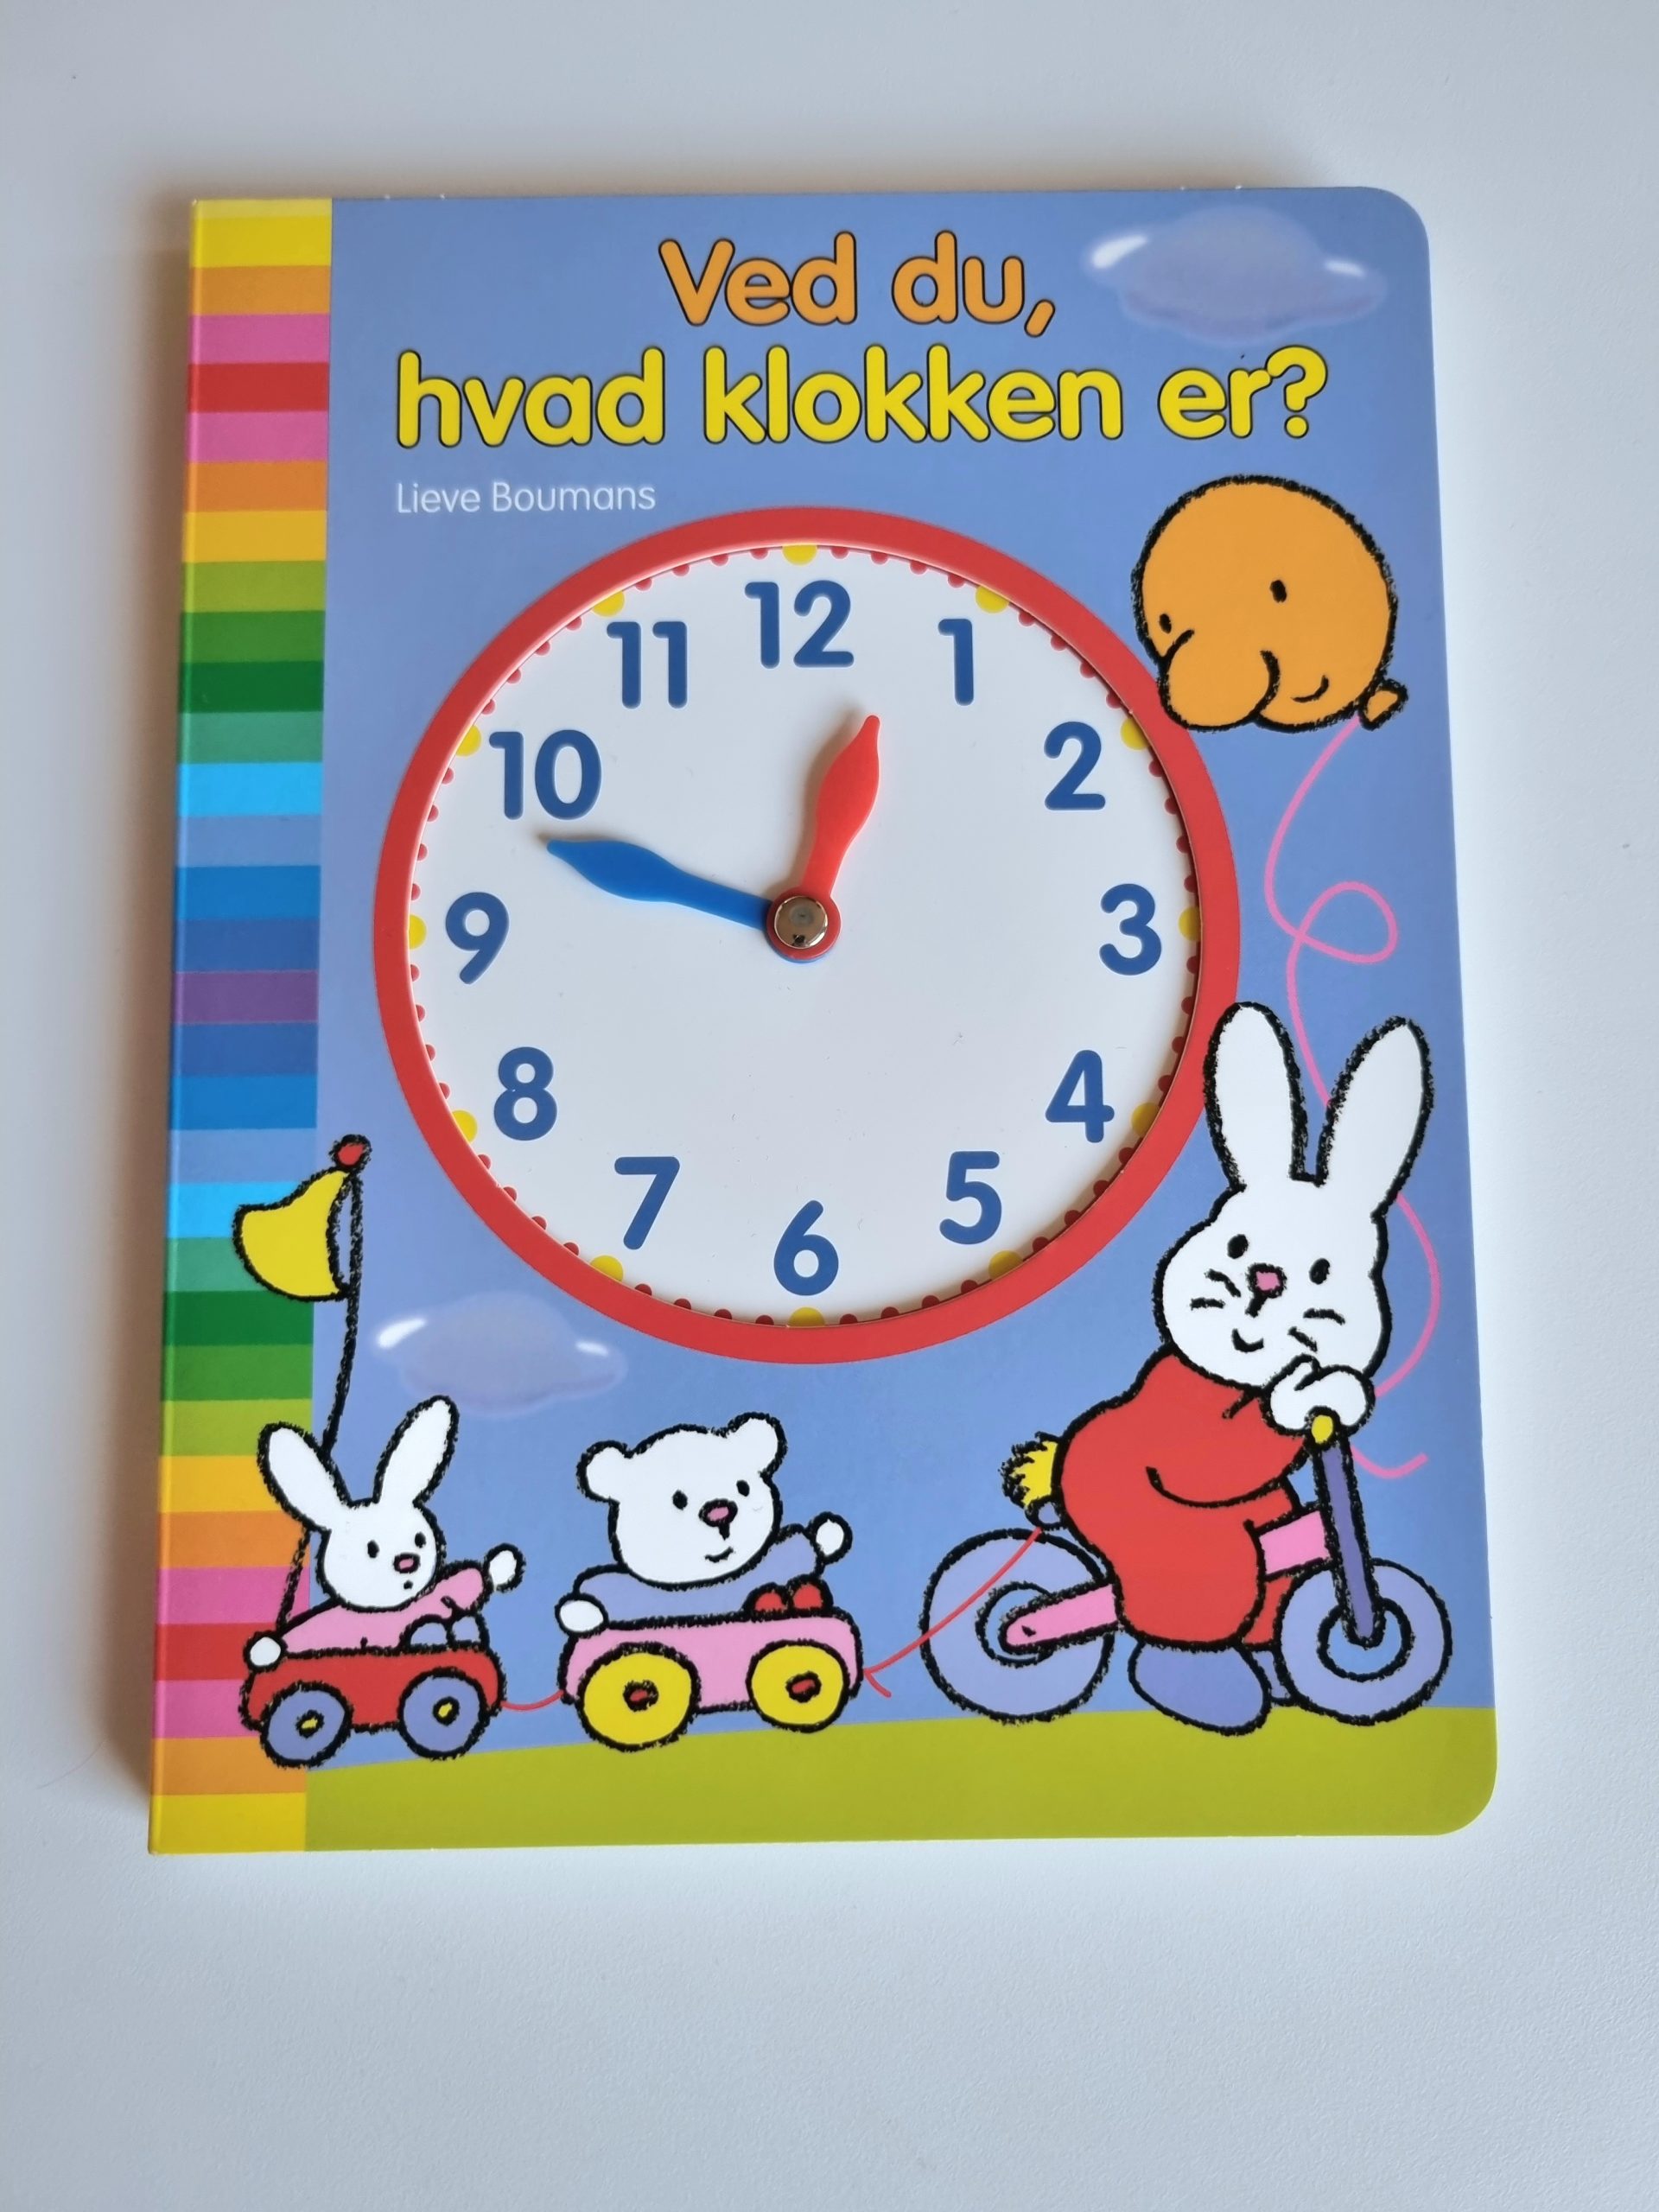 Billede af Bogen "Ved du, hvad klokken er?"